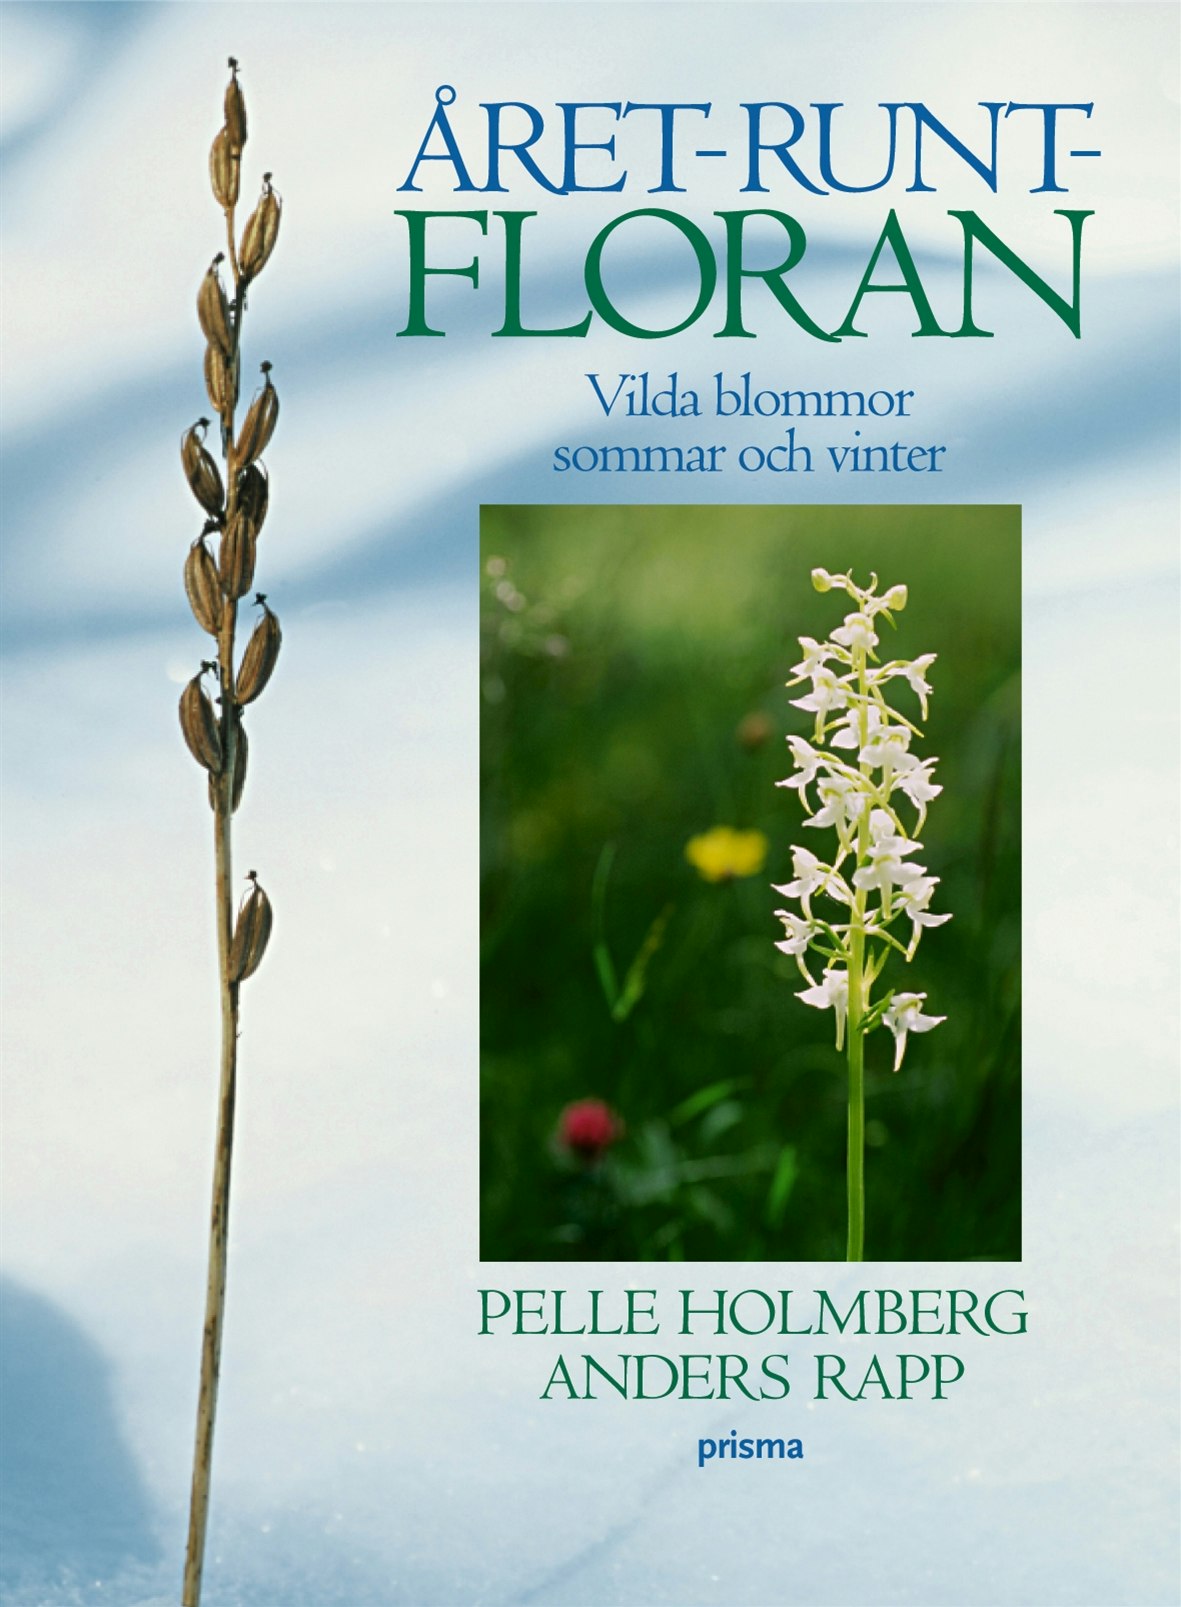 Året-runt-floran : Vilda blommor sommar och vinter